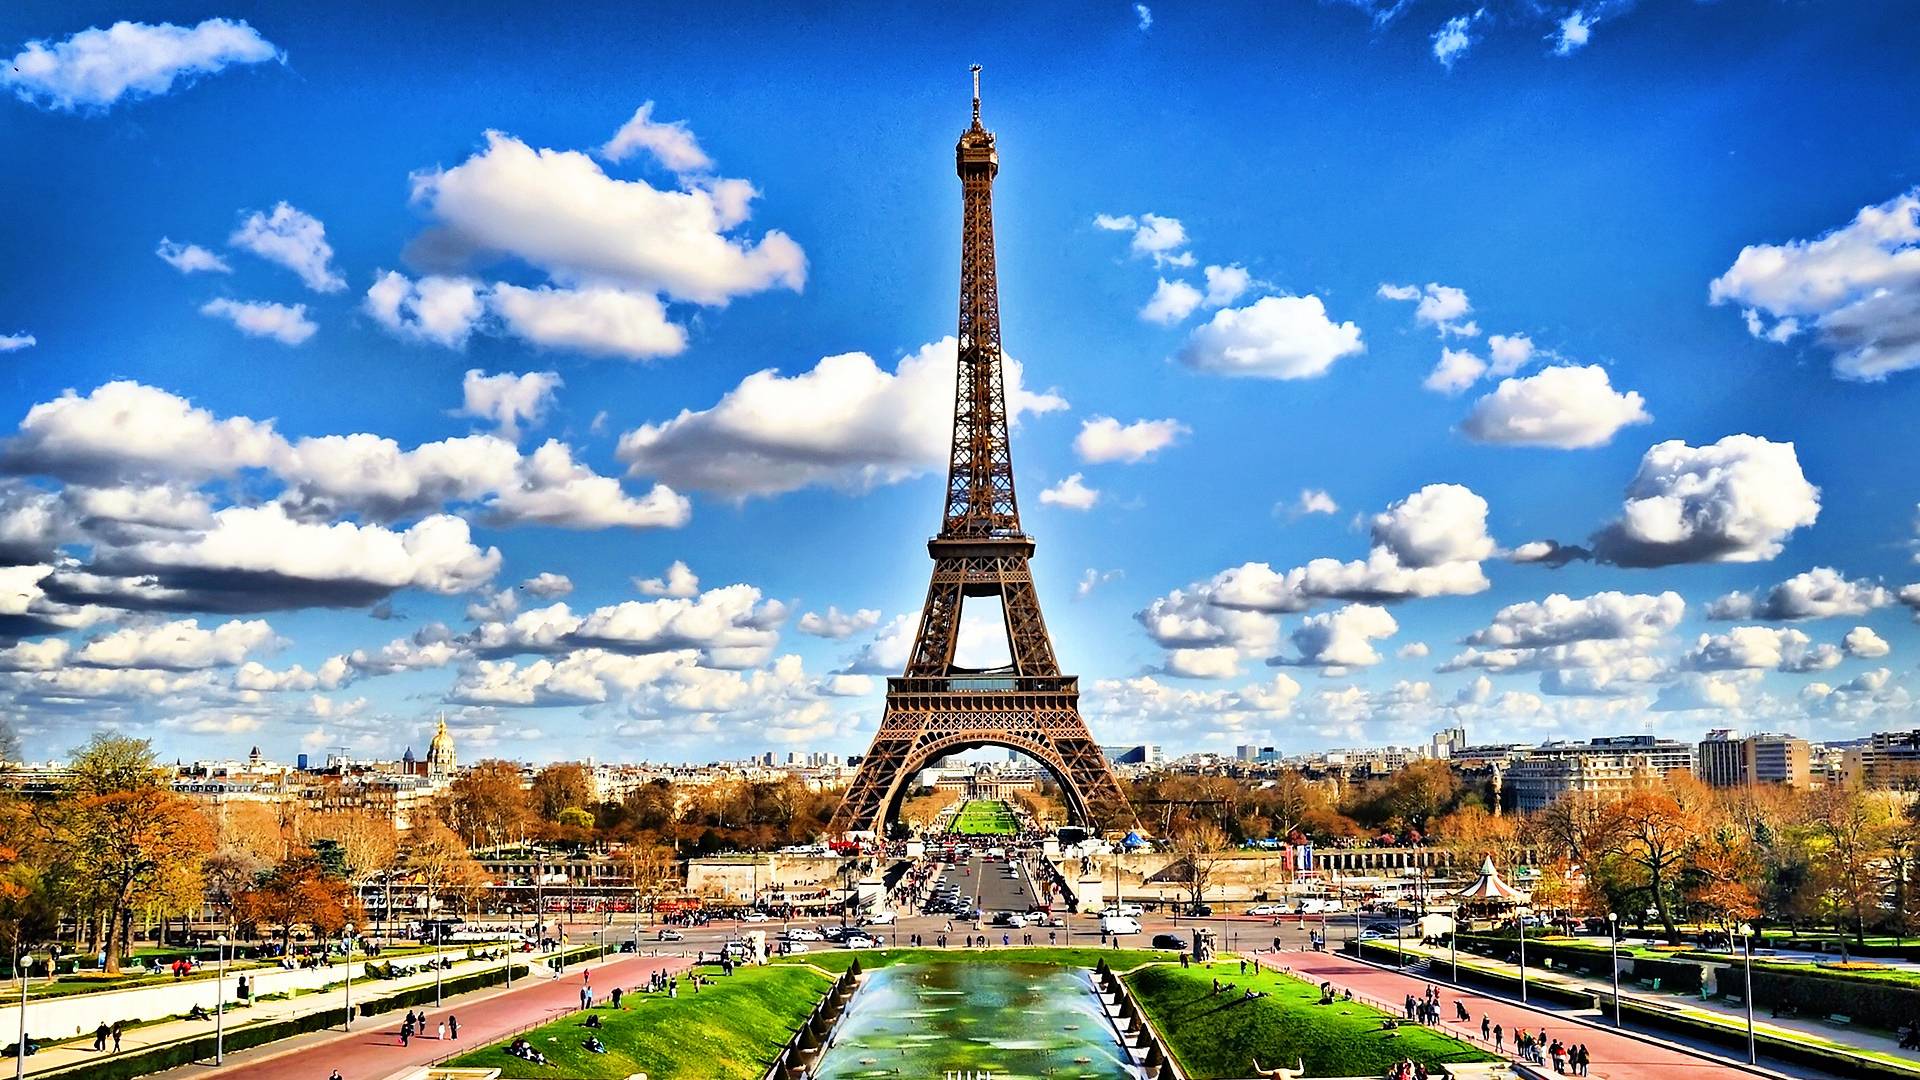 Fondos de la Torre Eiffel Descargar # 6I635CY - 4USkY